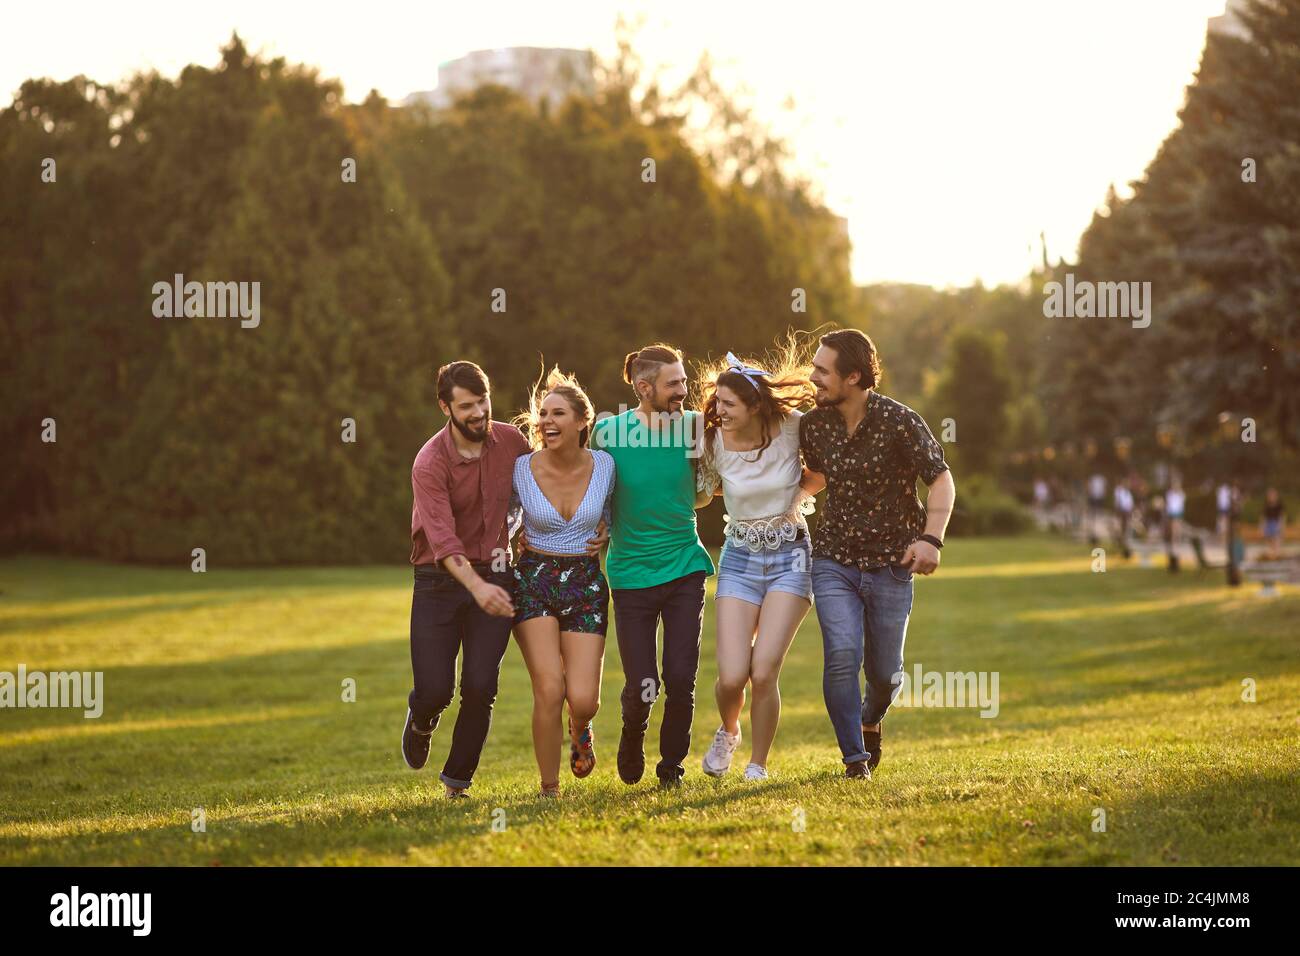 Eine Gruppe junger Leute haben Spaß, sich in einem Sommerpark entlang des Grases zu umarmen. Stockfoto